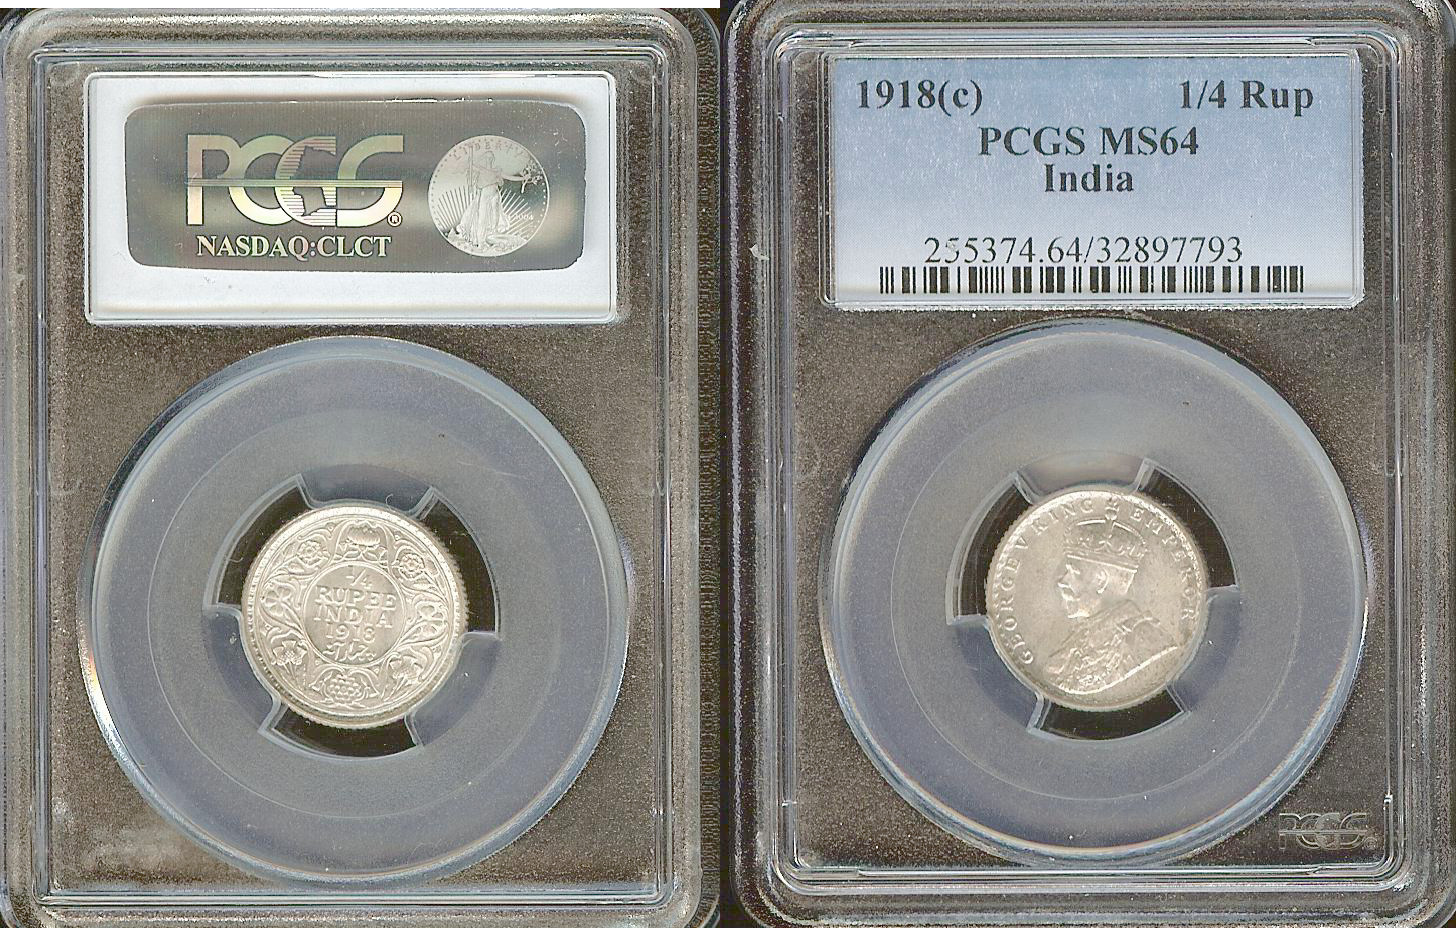 India 1/4 rupee 1918(c) PCGS MS64